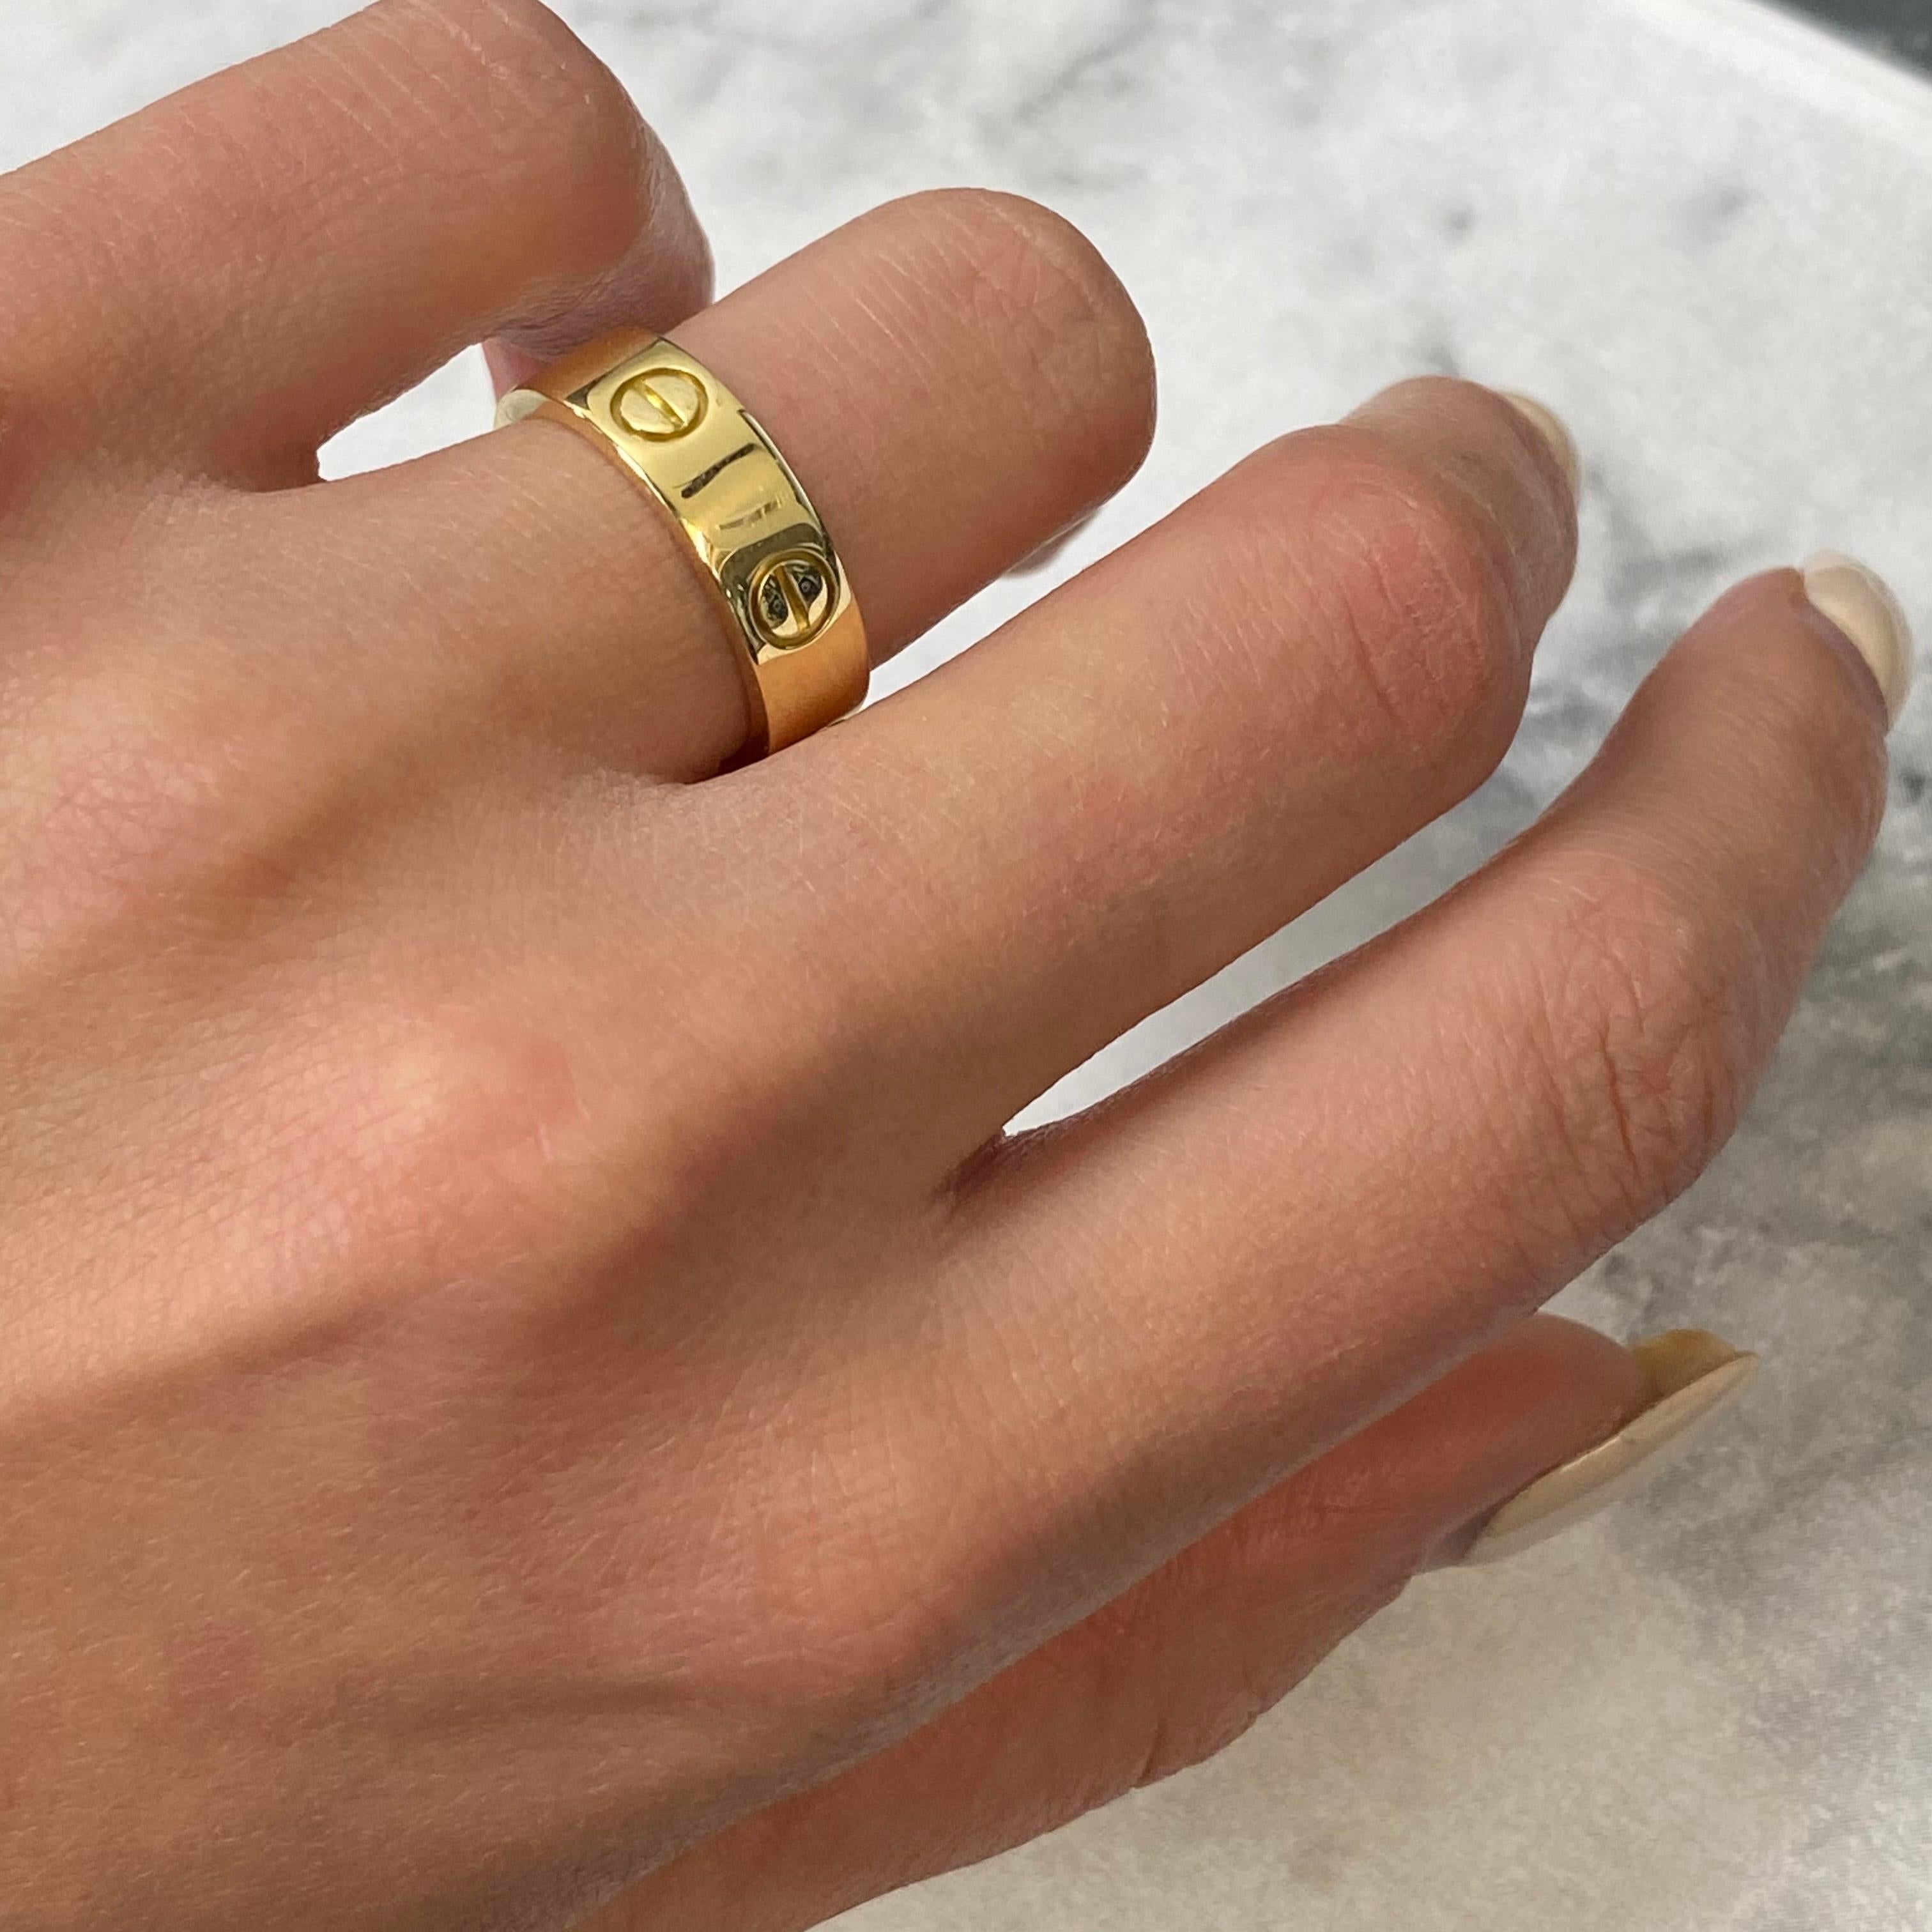 Women's Cartier 18 Karat Yellow Gold Love Ring